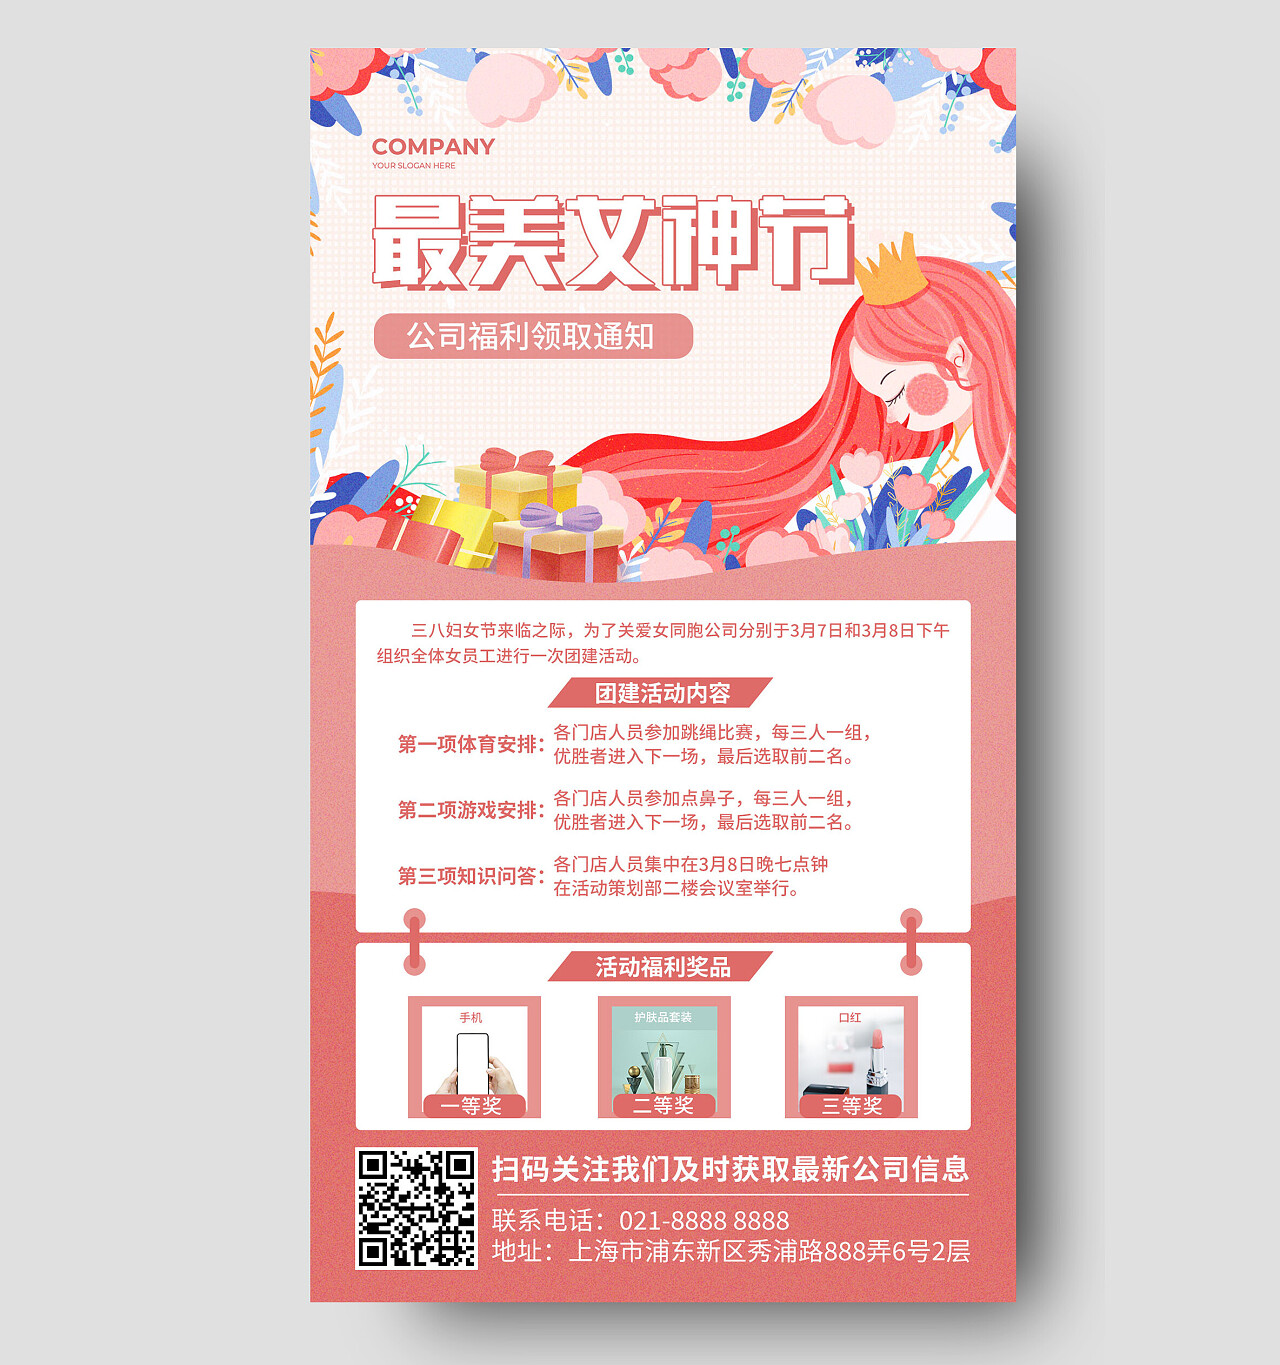 红色卡通最美女神节女王节公司活动妇女节海报节日